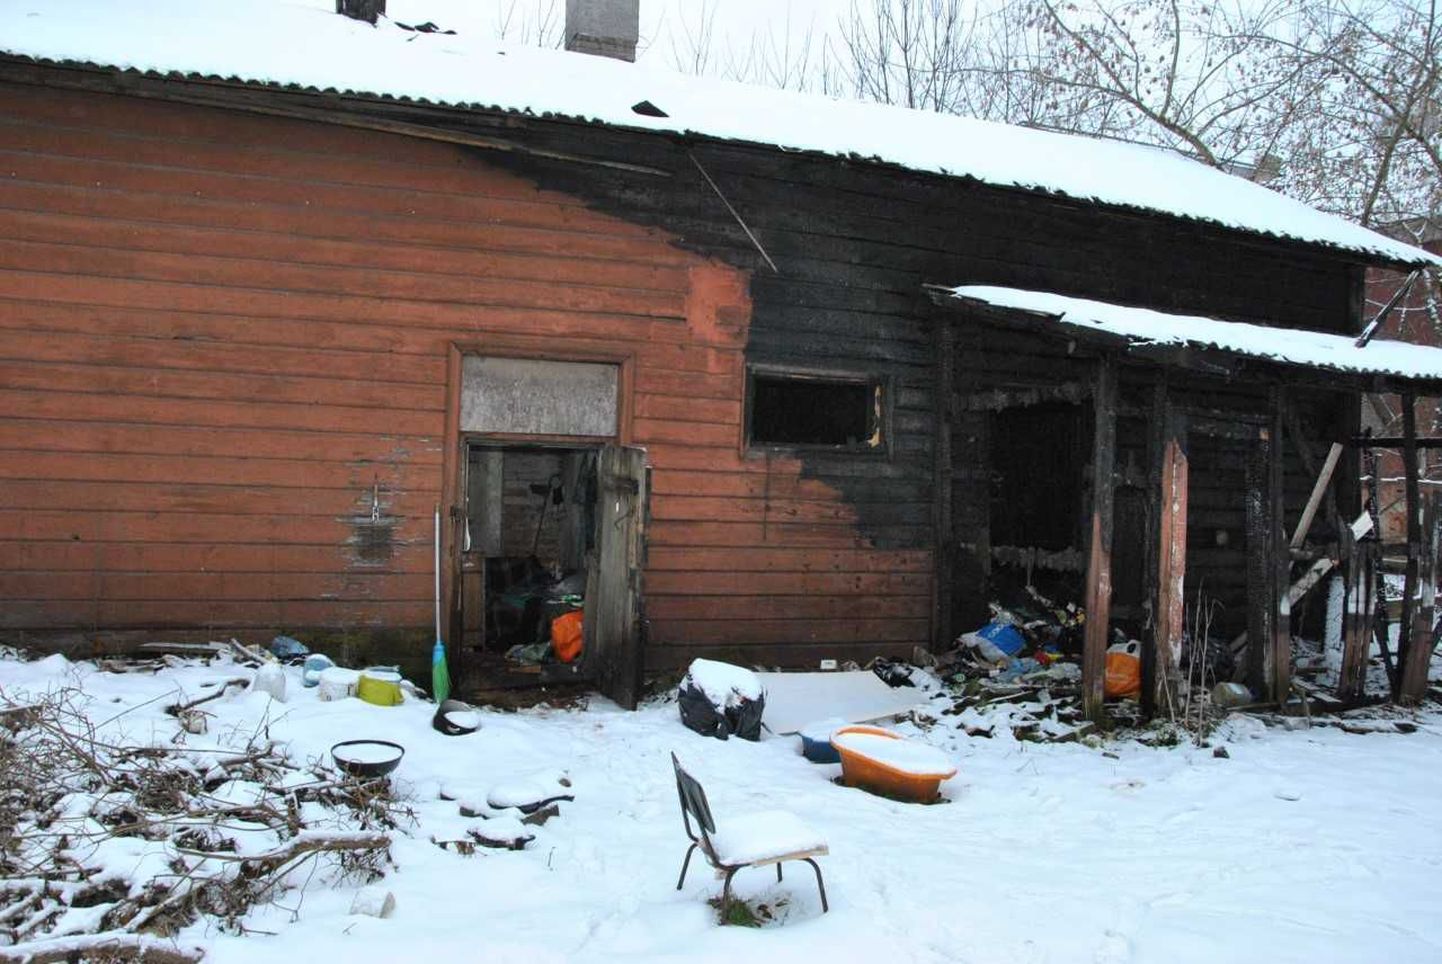 Дом на Нарвском шоссе в Тарту, в котором спасатели нашли двух бездомных.